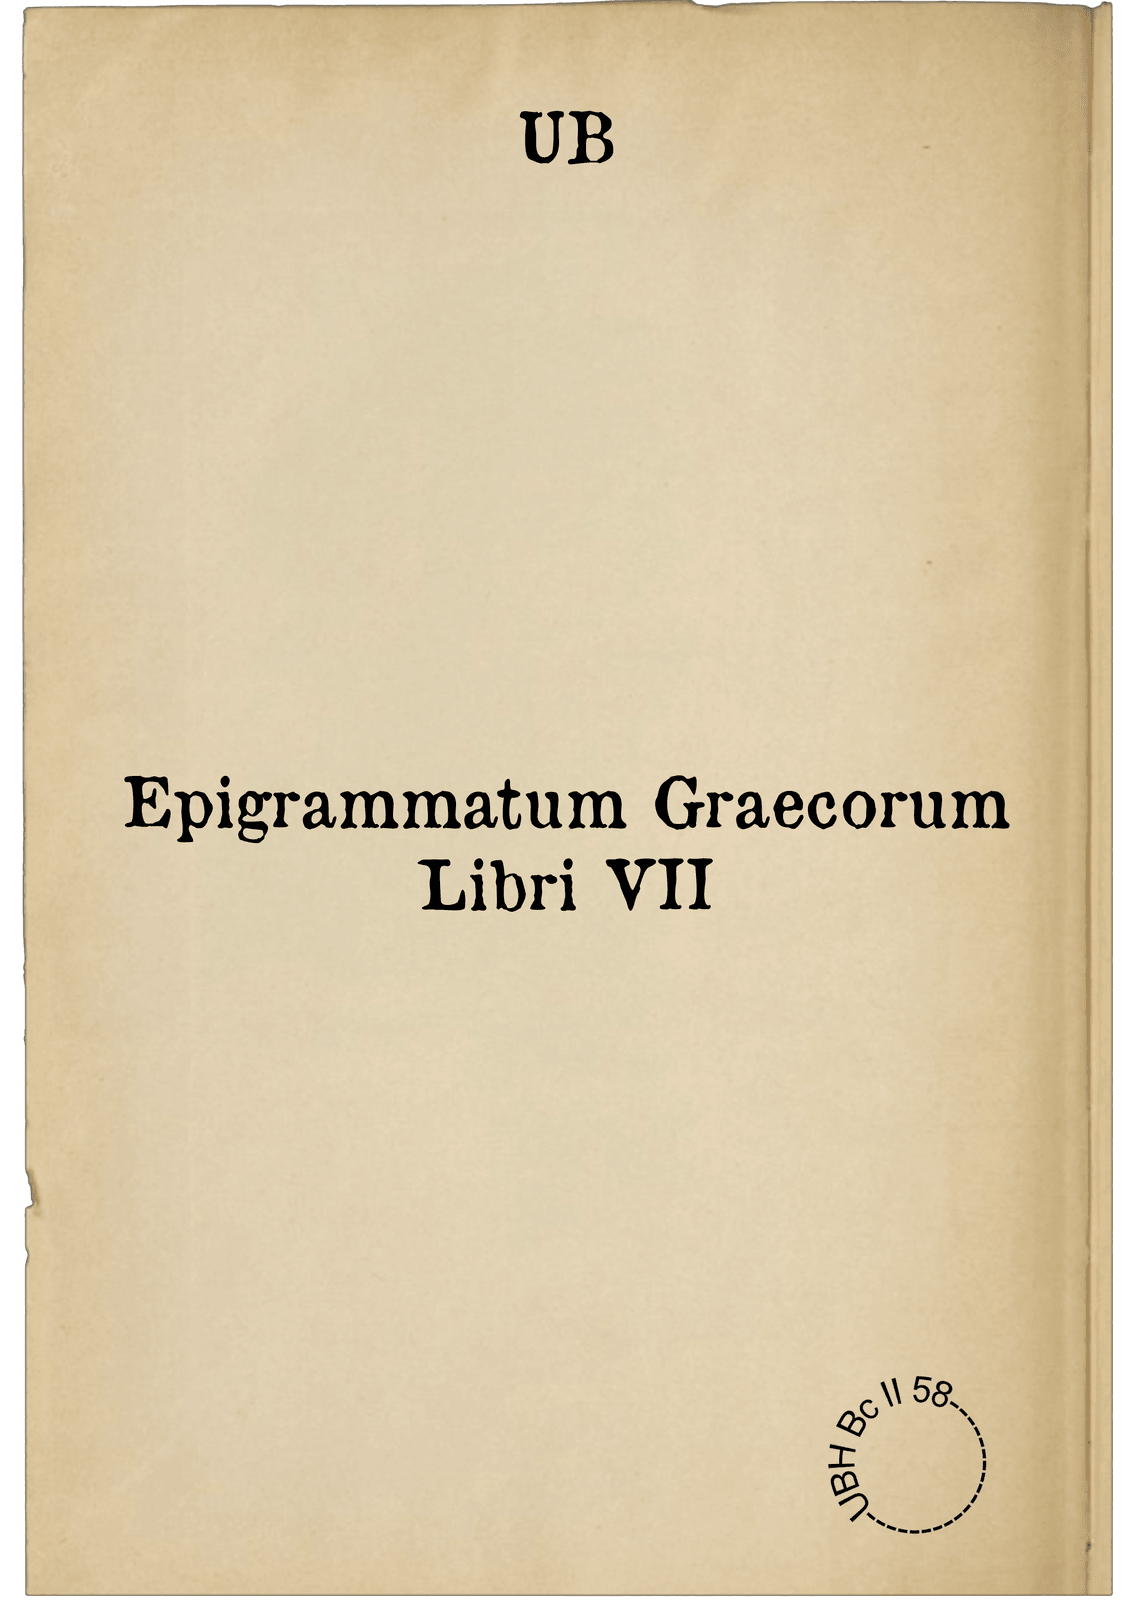 Epigrammatum Graecorum Libri VII